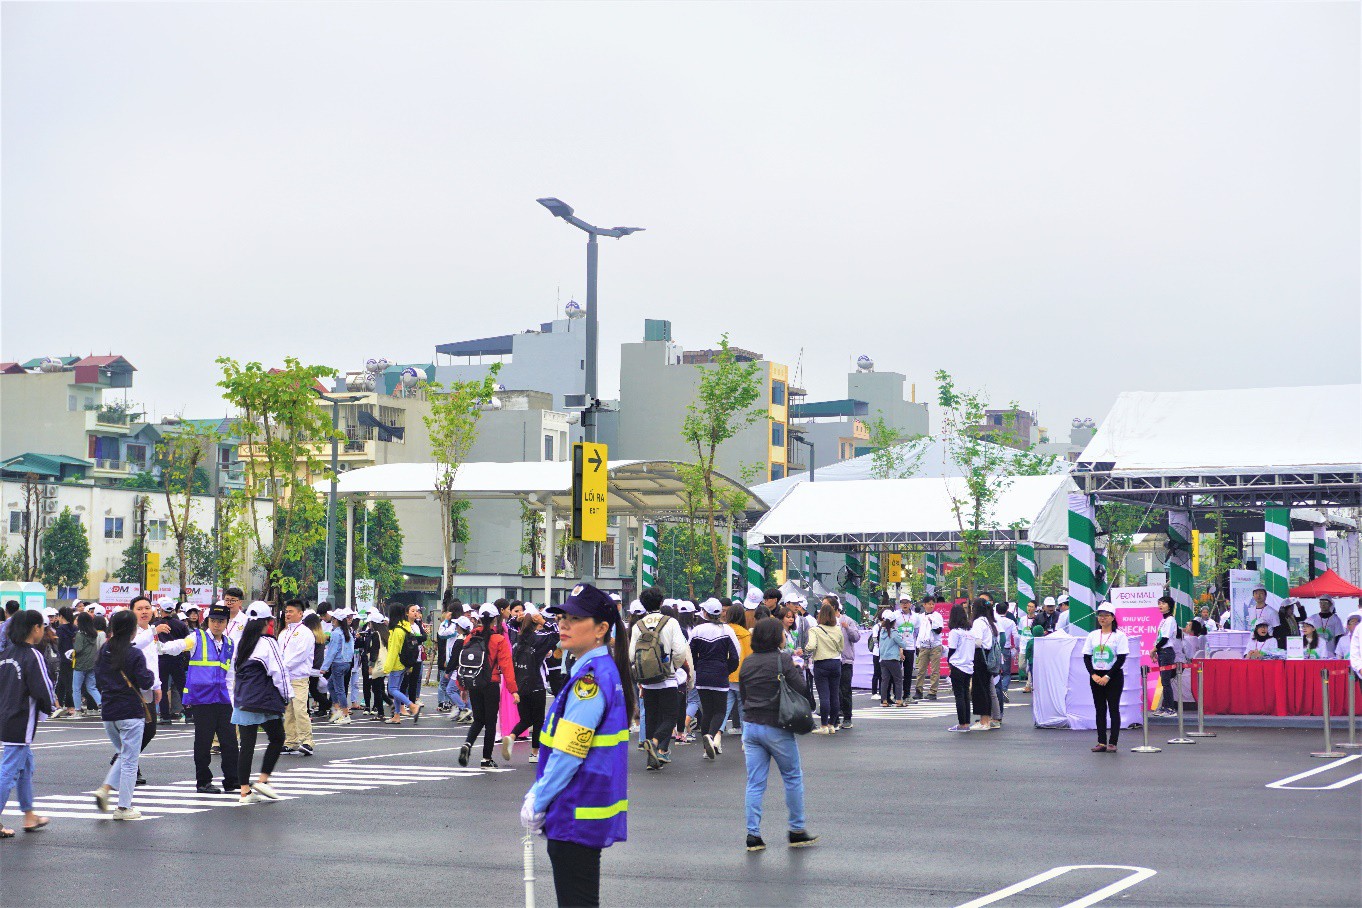 Hà Nội: Ngày hội trồng cây xanh tại trung tâm thương mại thu hút hàng ngàn người tham gia - Ảnh 1.